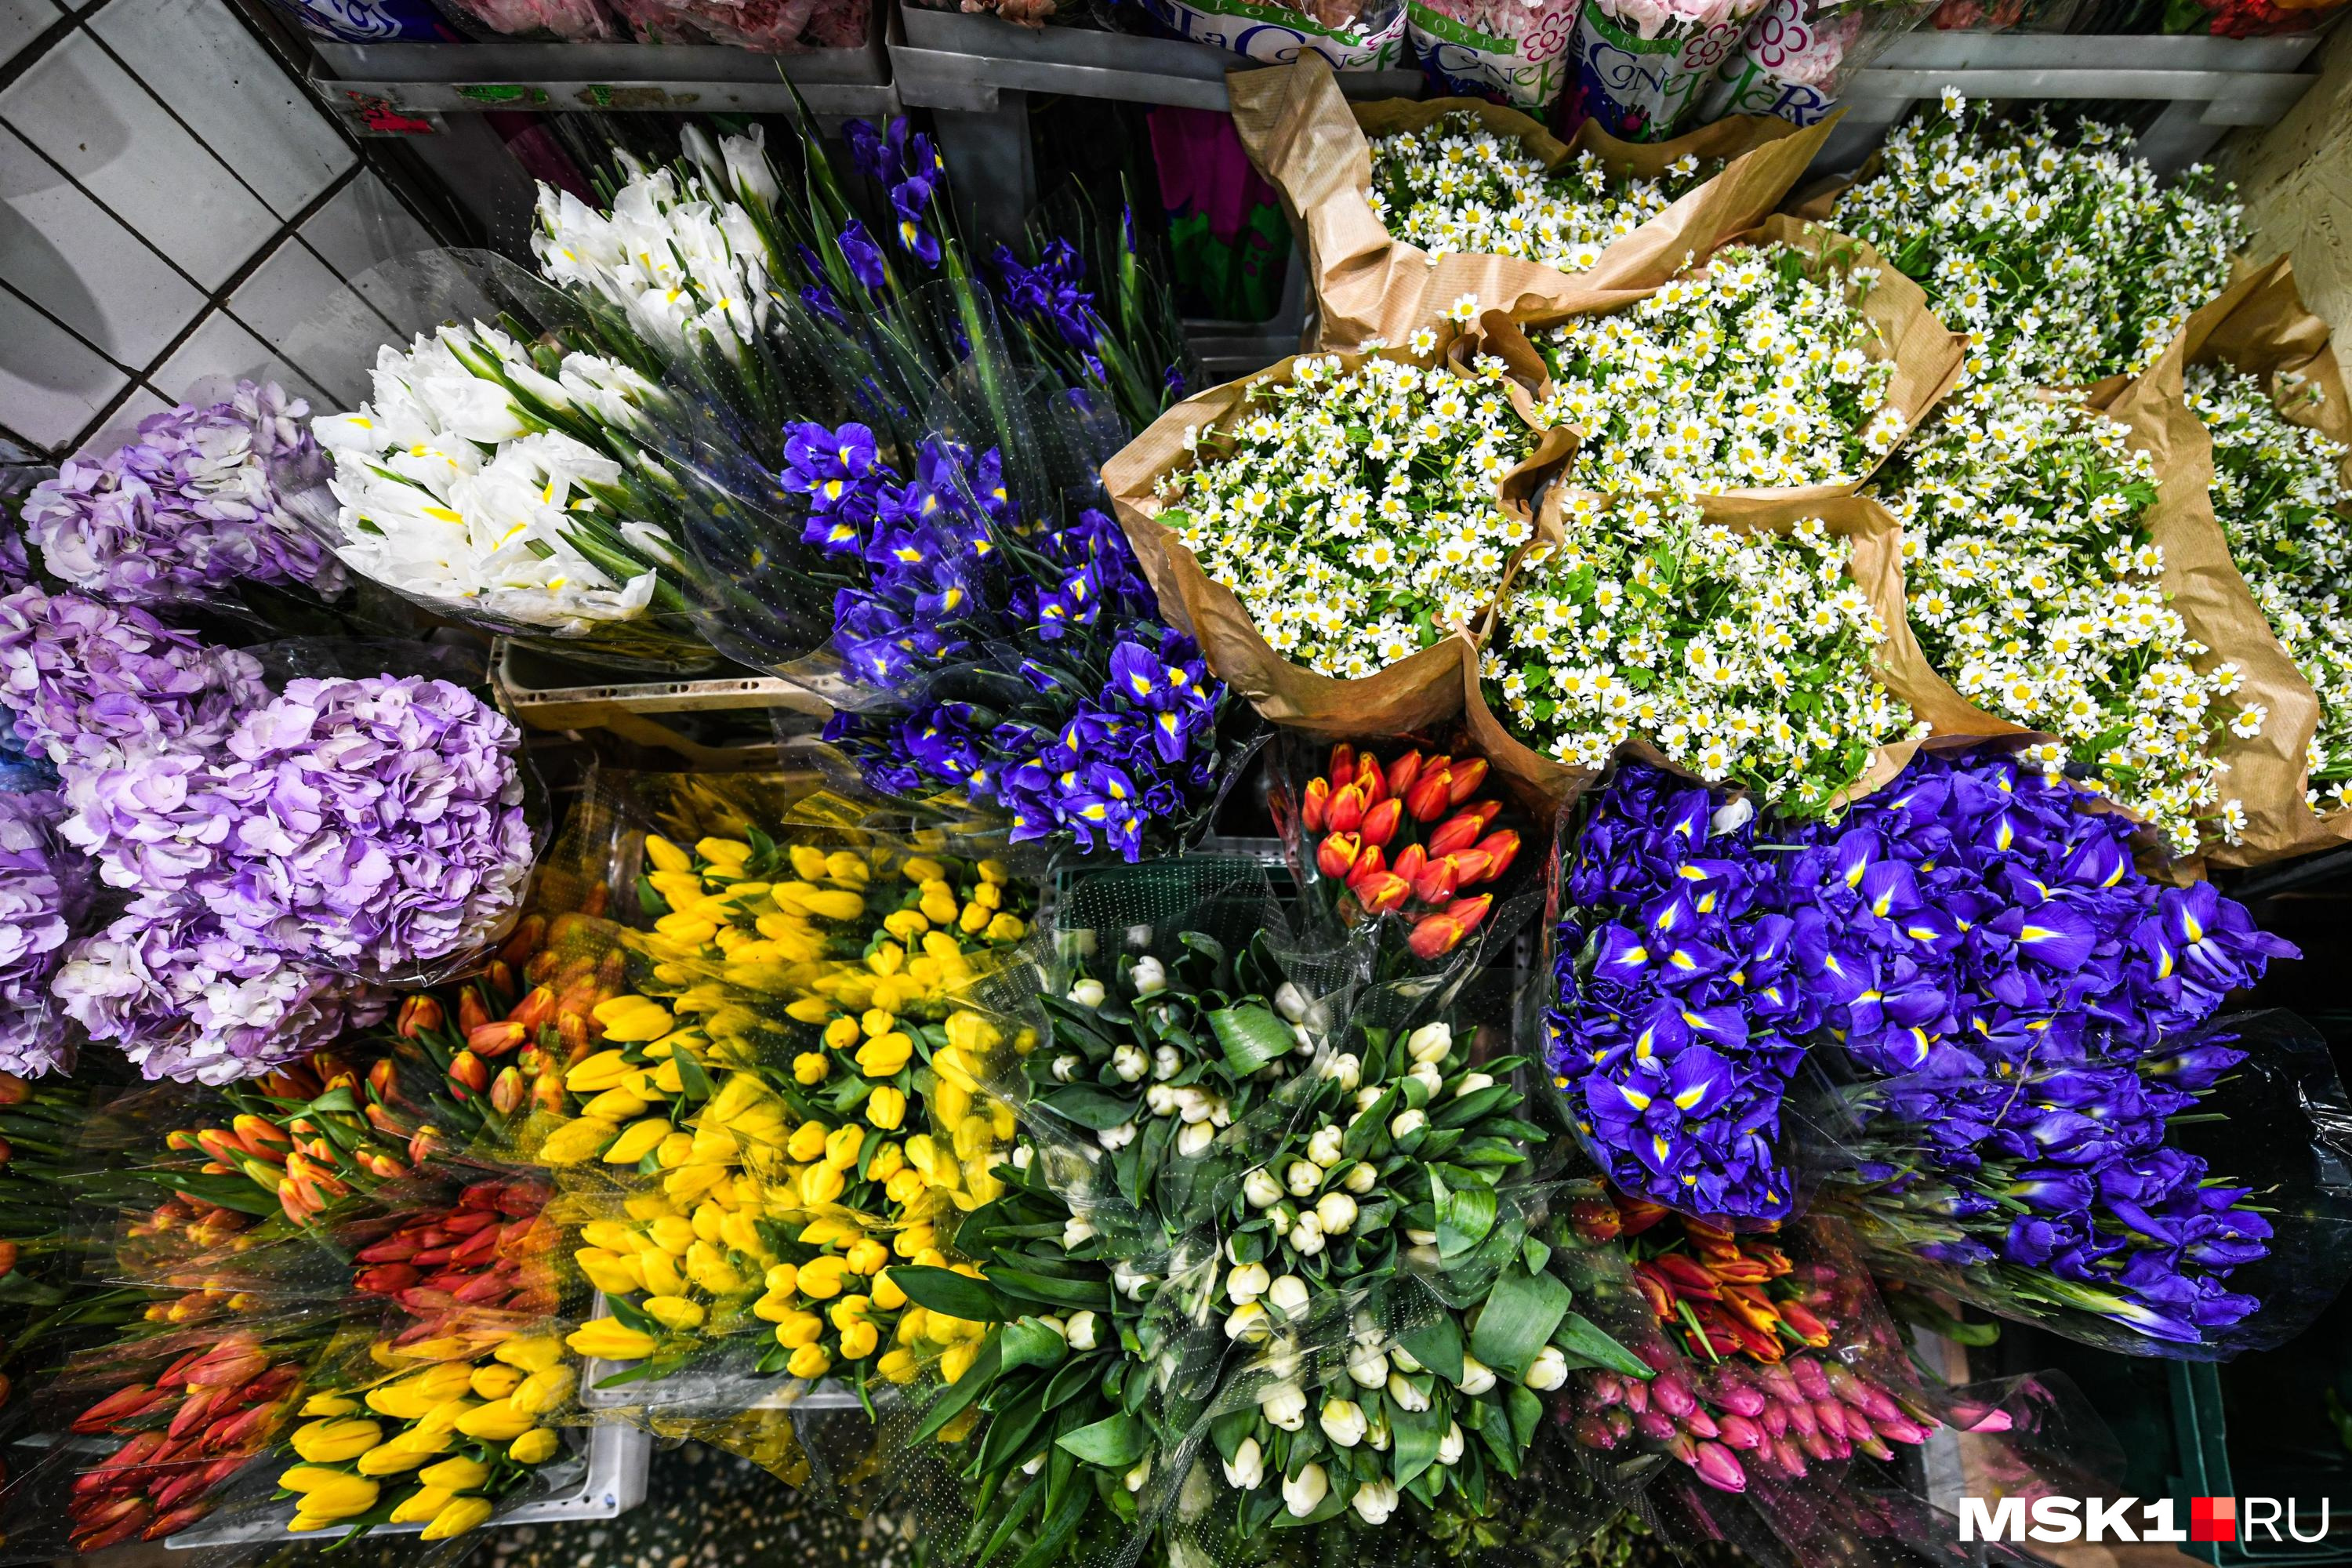 Надо было покупать заранее! В Екатеринбурге «сломалось» крупнейшее приложение по покупке цветов